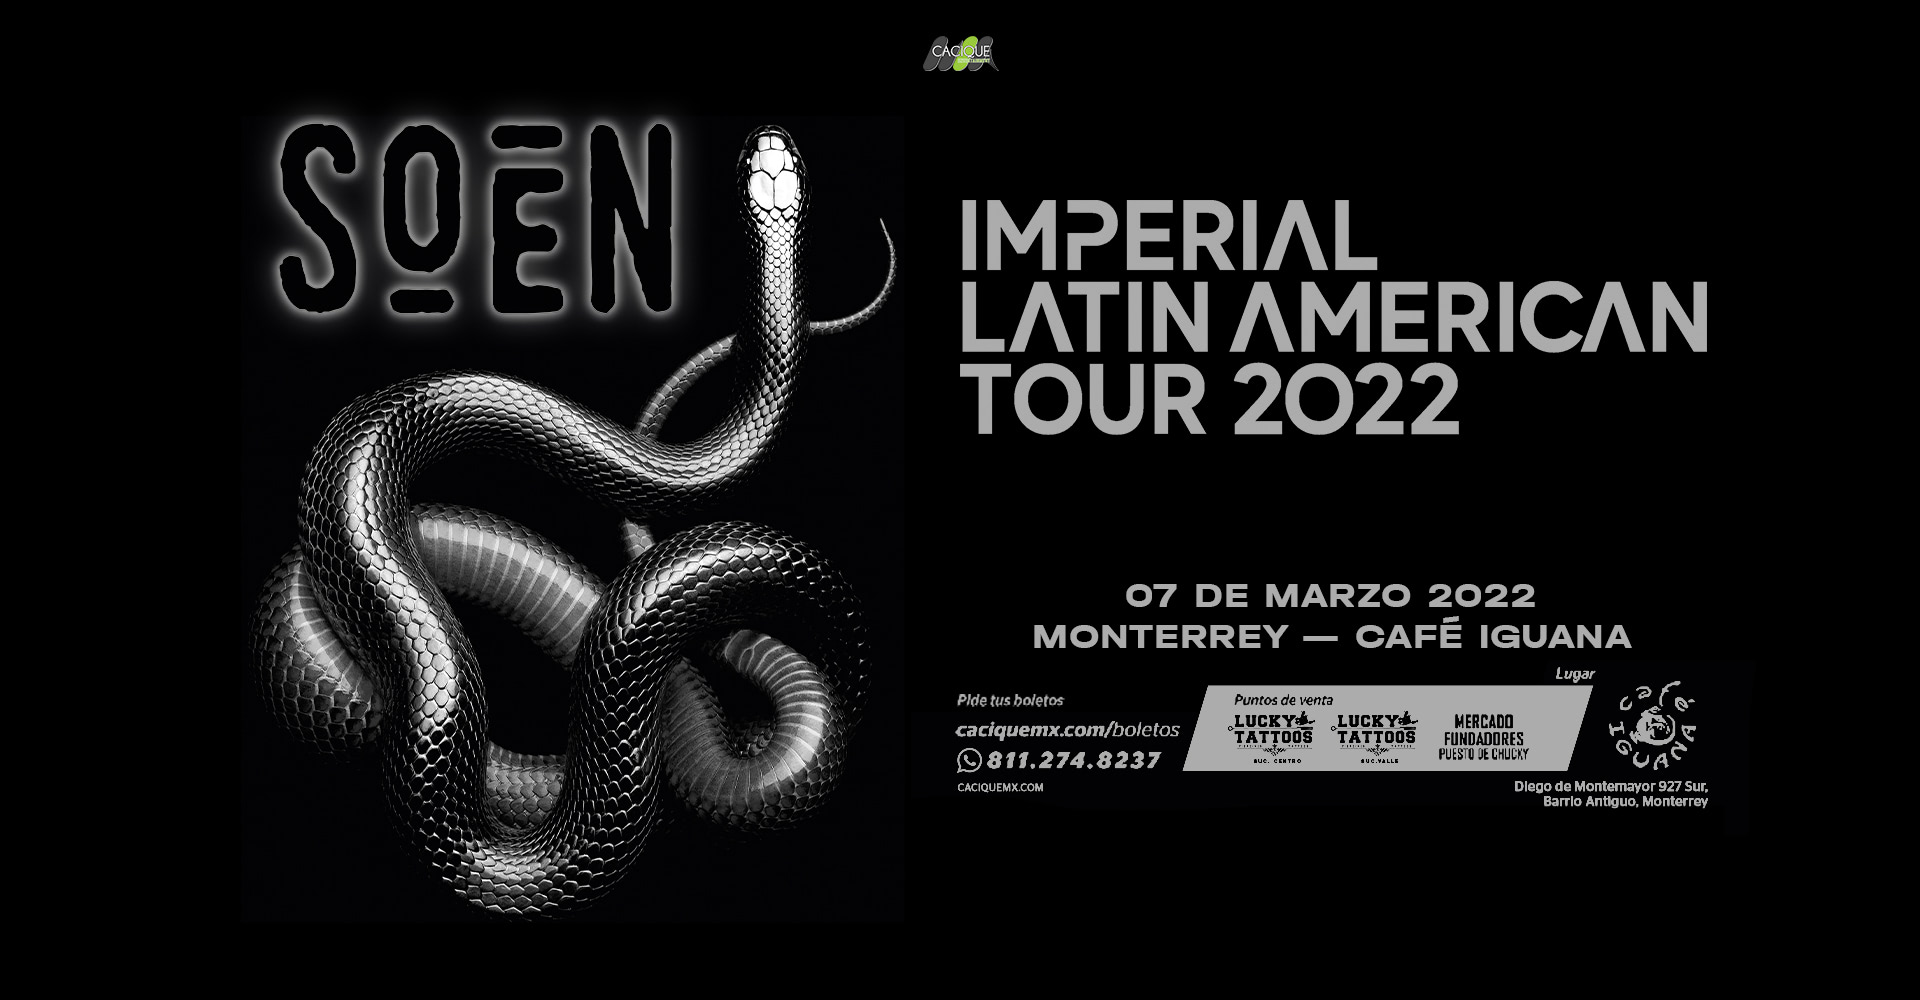 Soen_Monterrey2022_2021